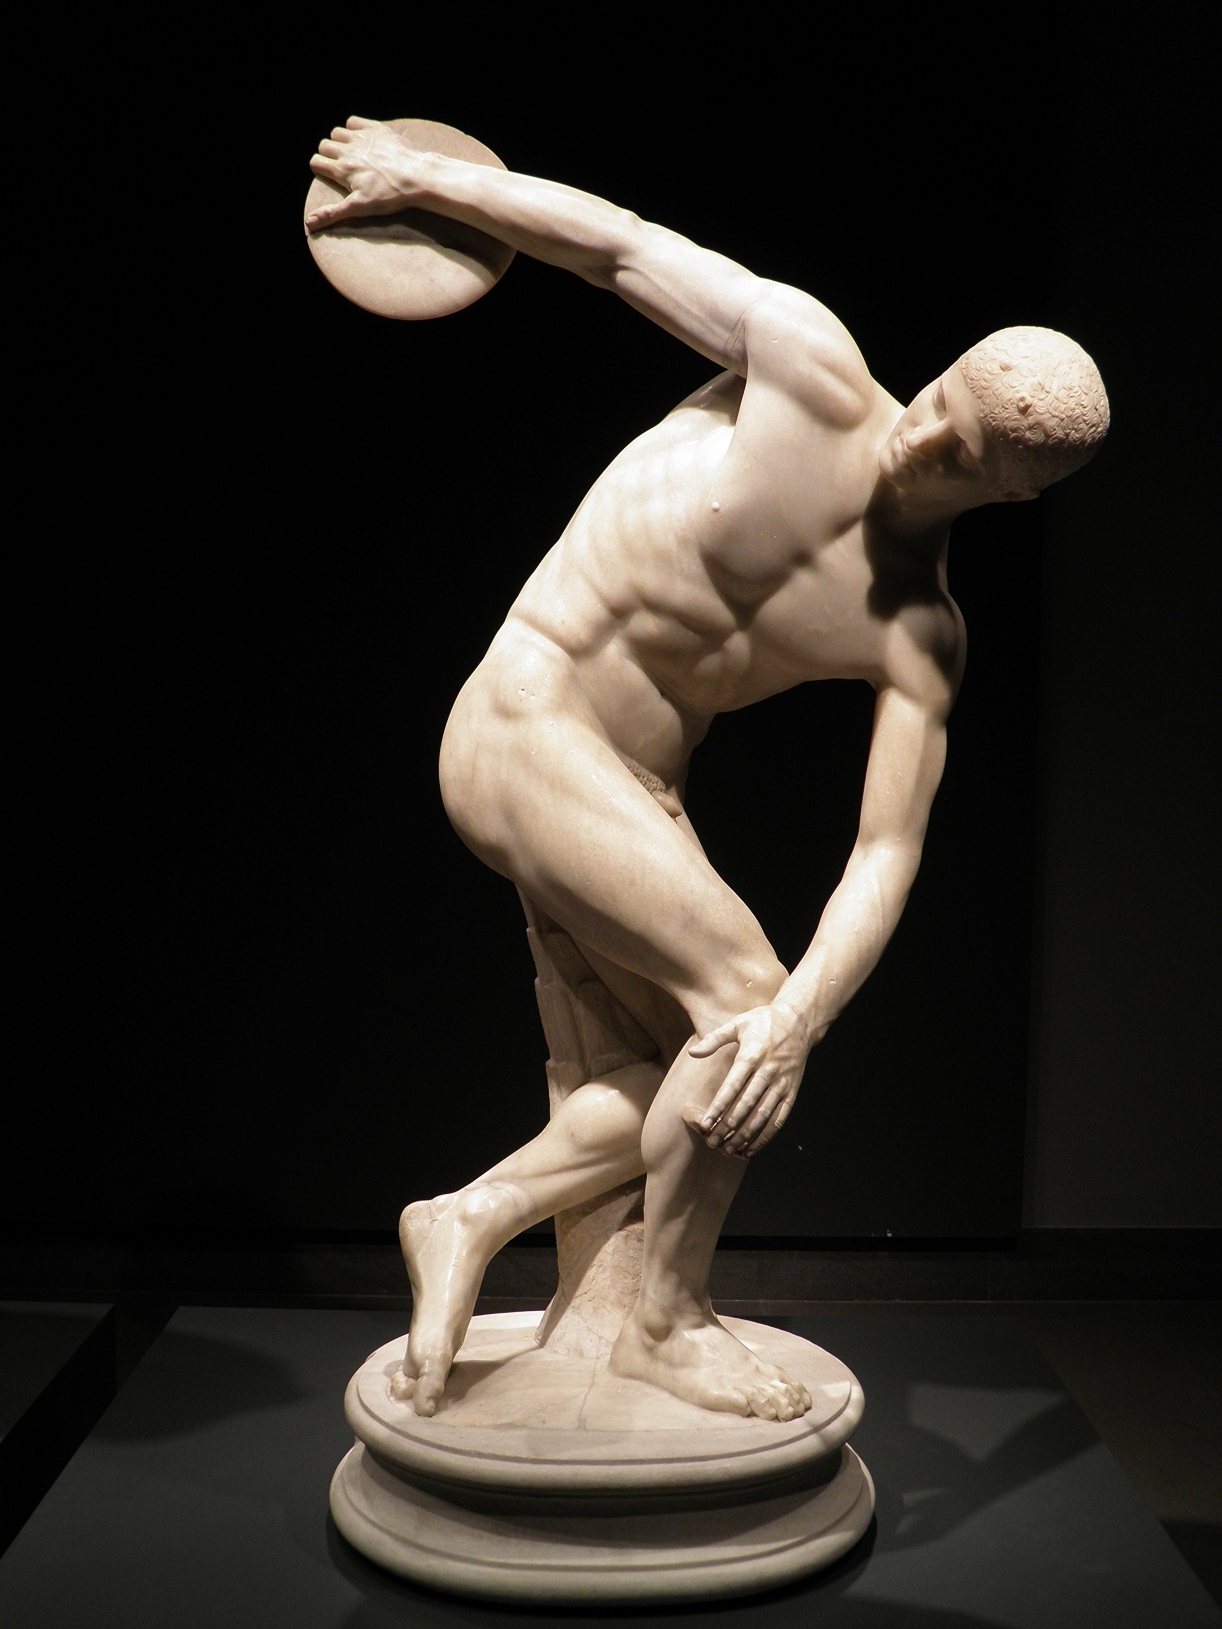 Římská kopie řeckého Diskobola sochaře Myróna, zdroj: wikimediacommons